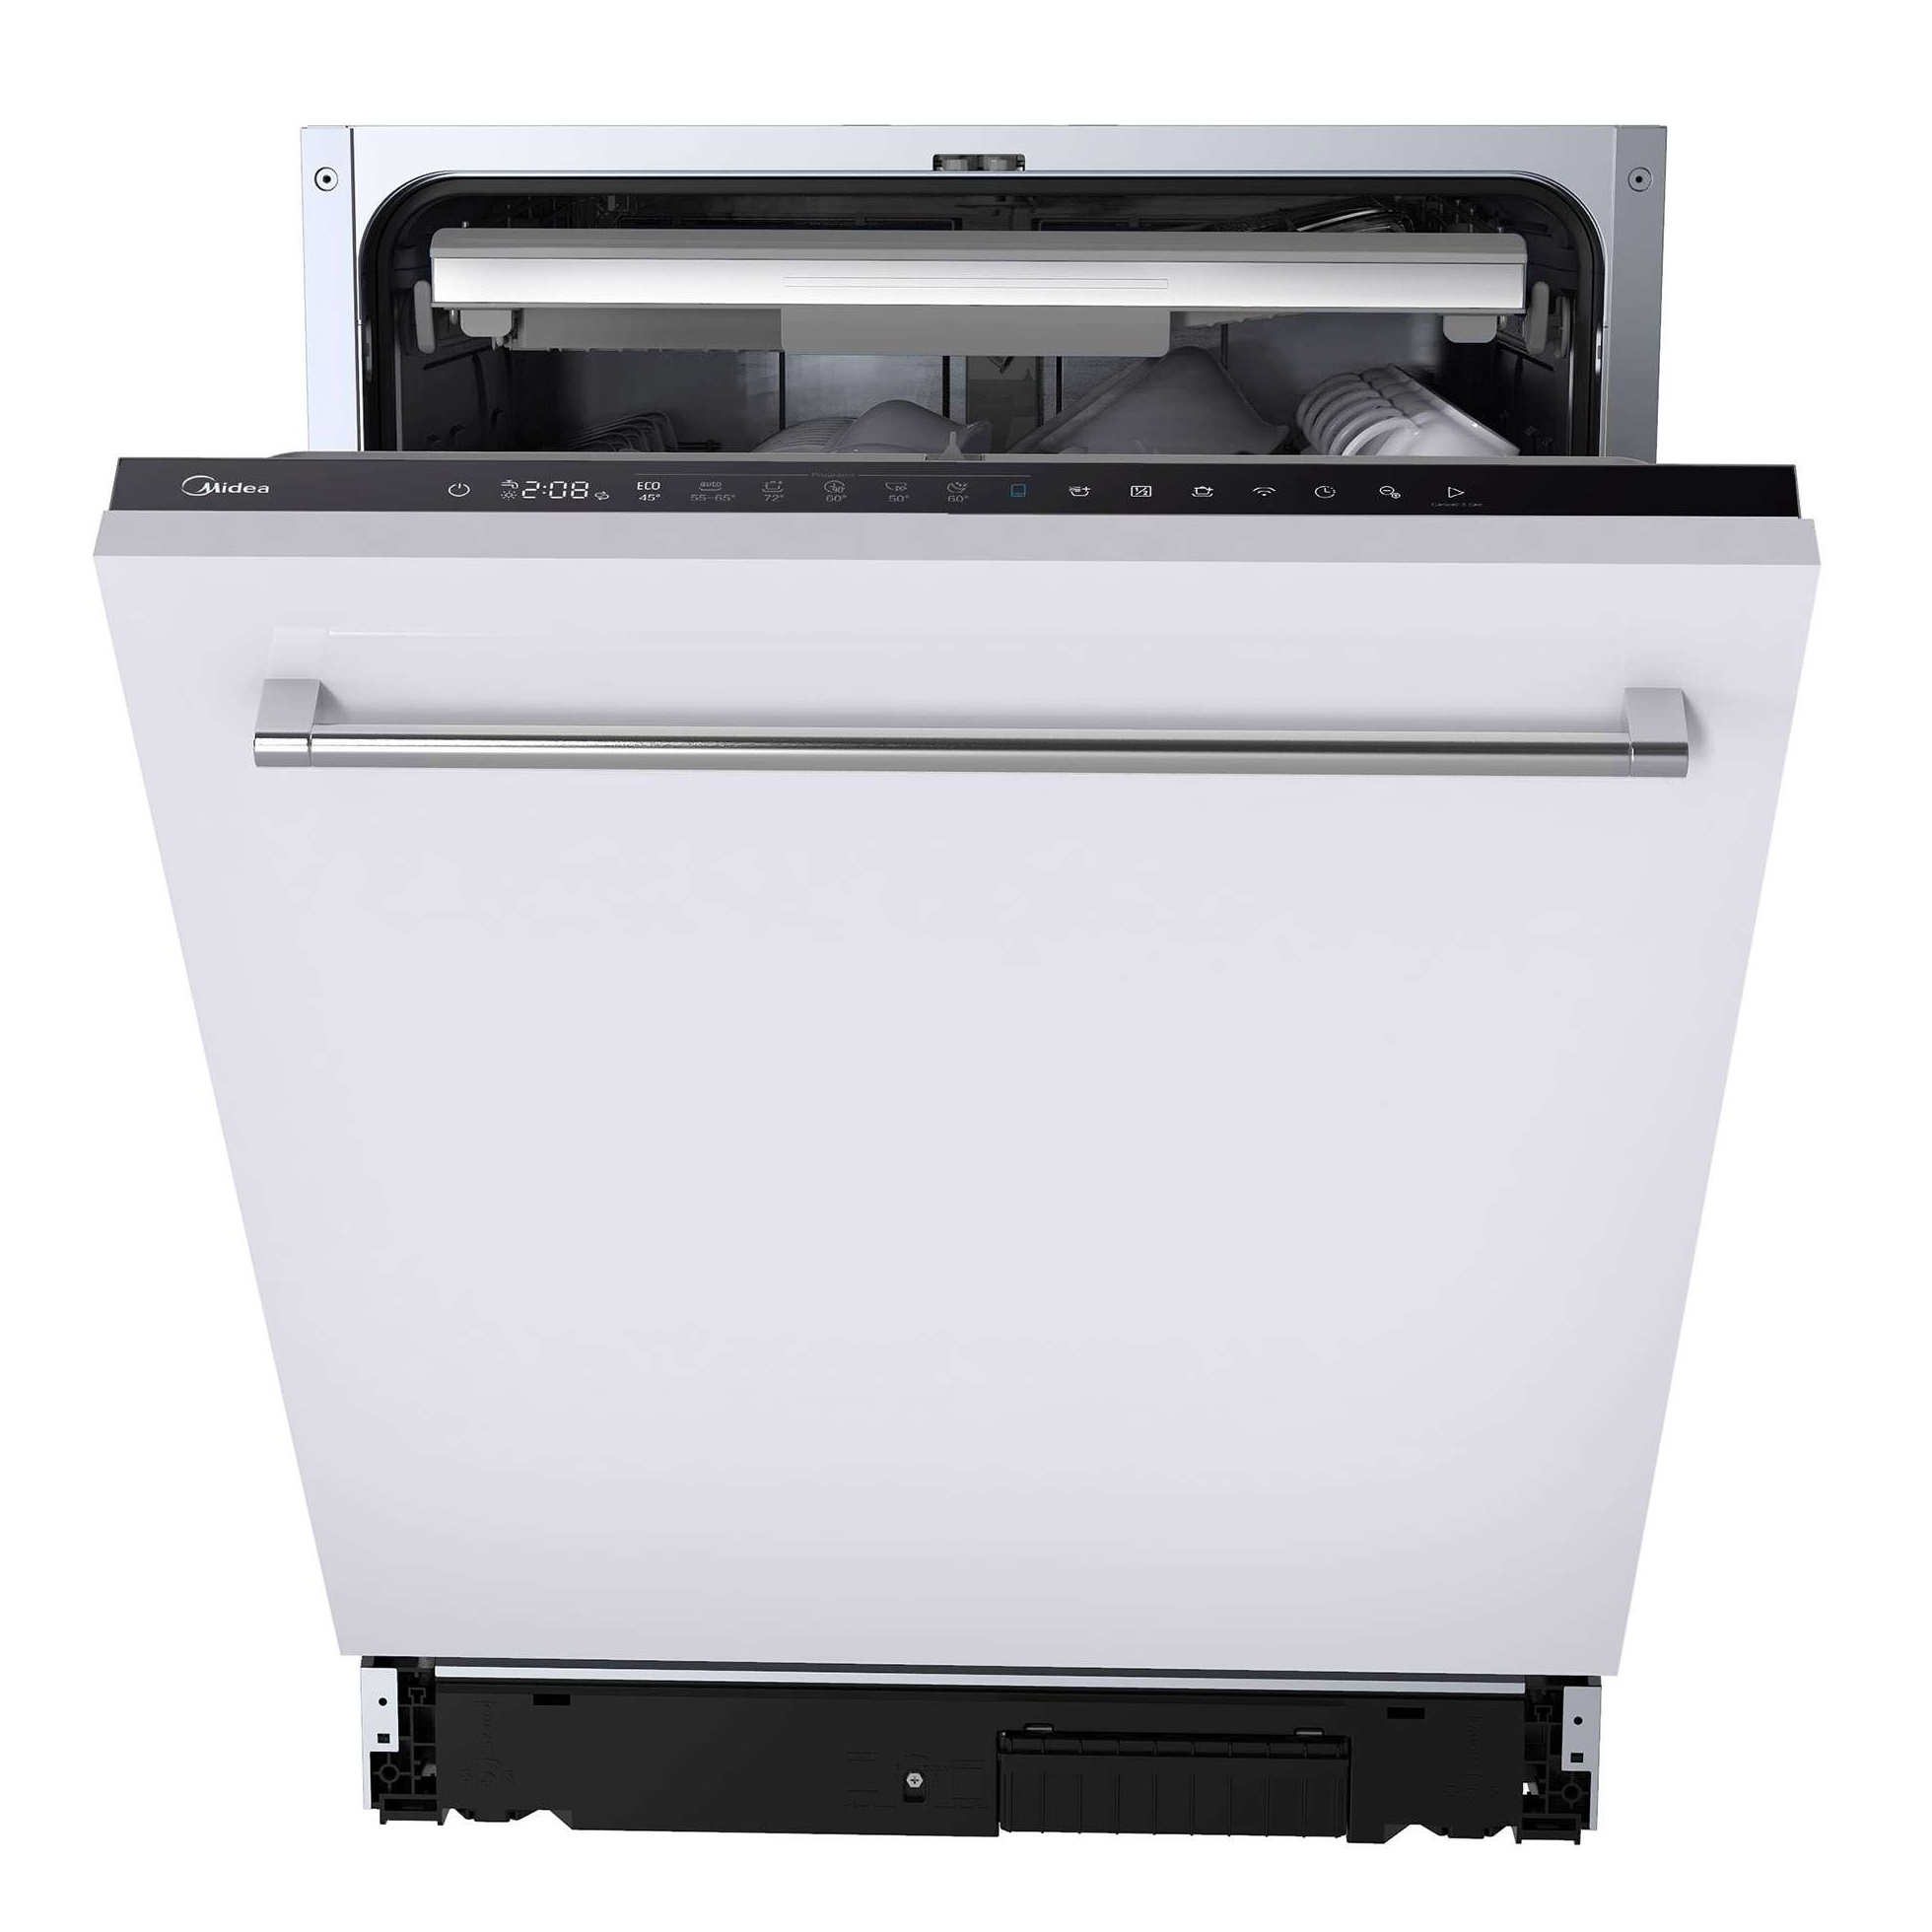 Встраиваемая посудомоечная машина Midea MID60S360i встраиваемая посудомоечная машина midea mid60s130i 60см 5 программ серебристый